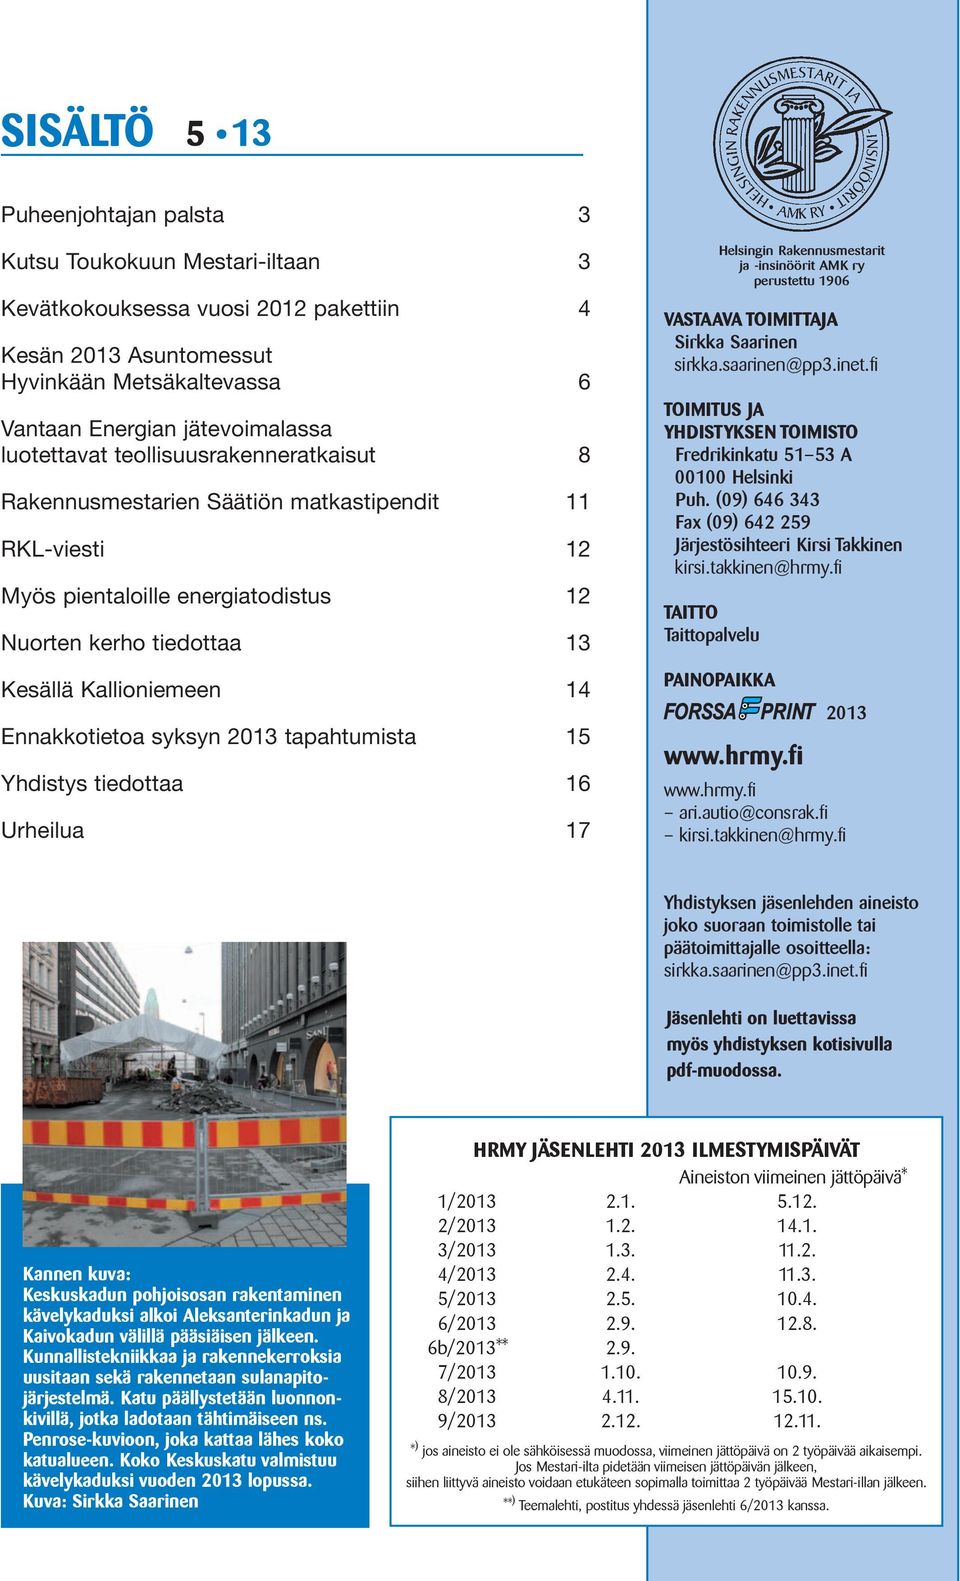 Ennakkotietoa syksyn 2013 tapahtumista 15 Yhdistys tiedottaa 16 Urheilua 17 VASTAAVA TOIMITTAJA Sirkka Saarinen sirkka.saarinen@pp3.inet.